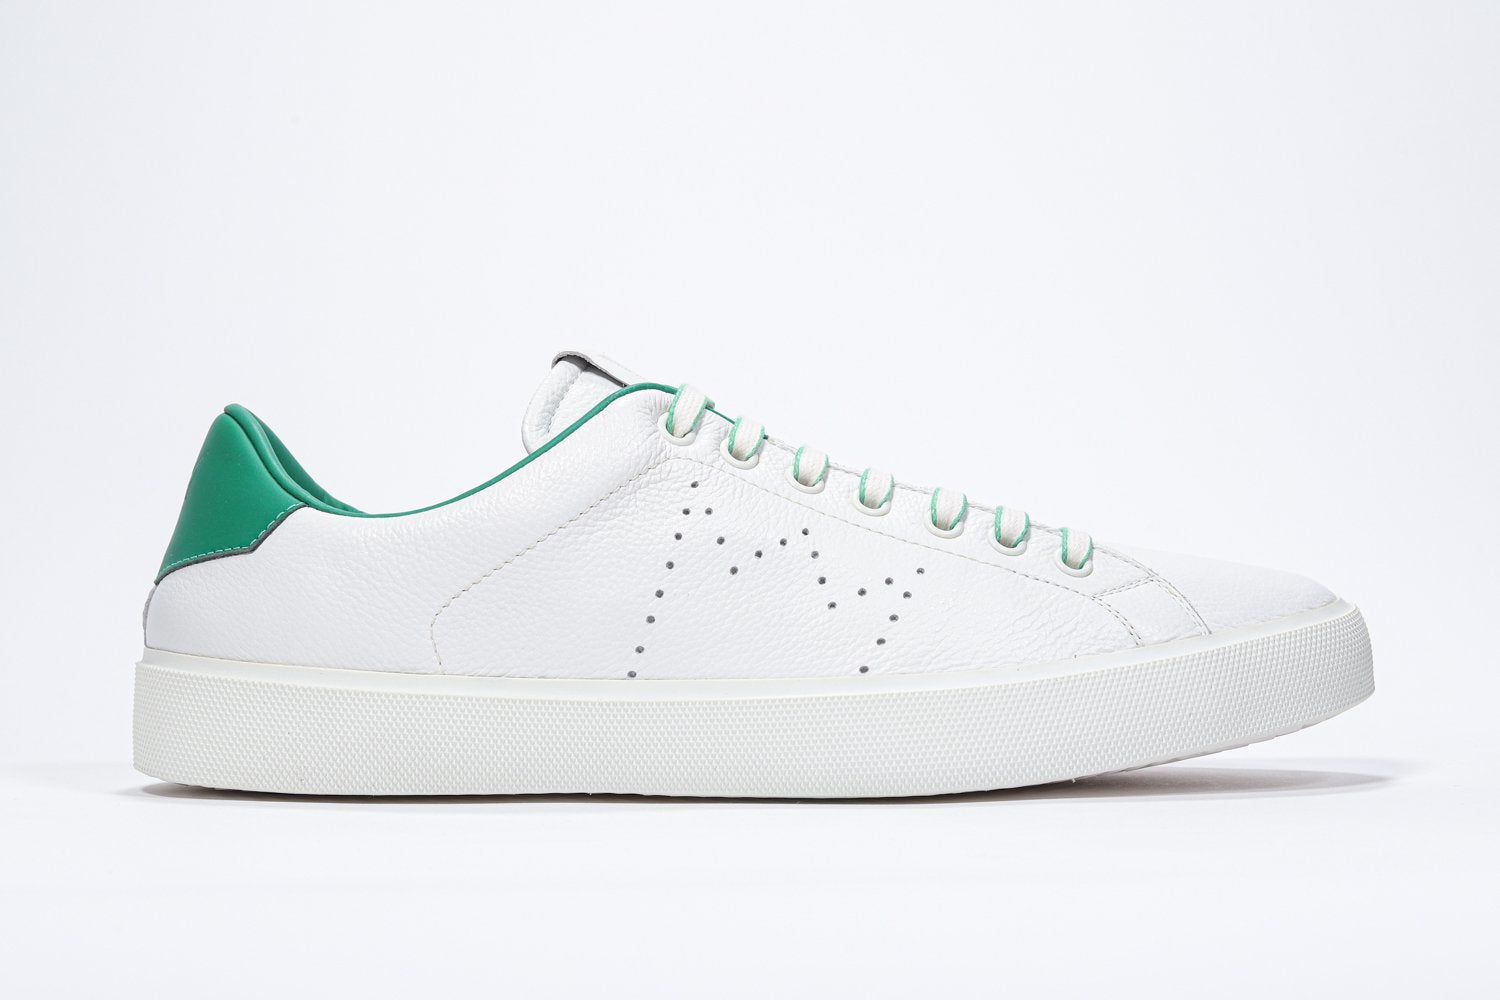 Weißes Low-Top-Profil sneaker mit grünen Details und perforiertem Kronenlogo auf dem Schaft. Schaft aus Vollleder und weiße Gummisohle.